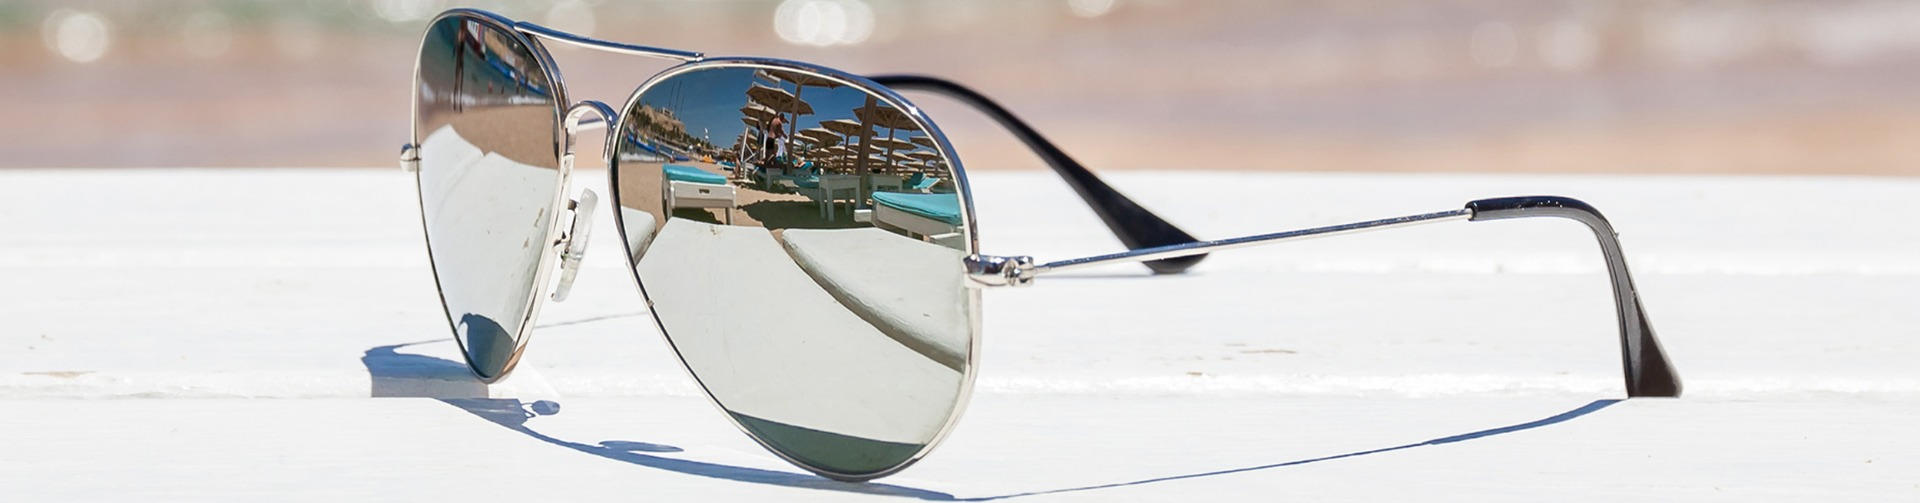 mirror mirror sunglasses